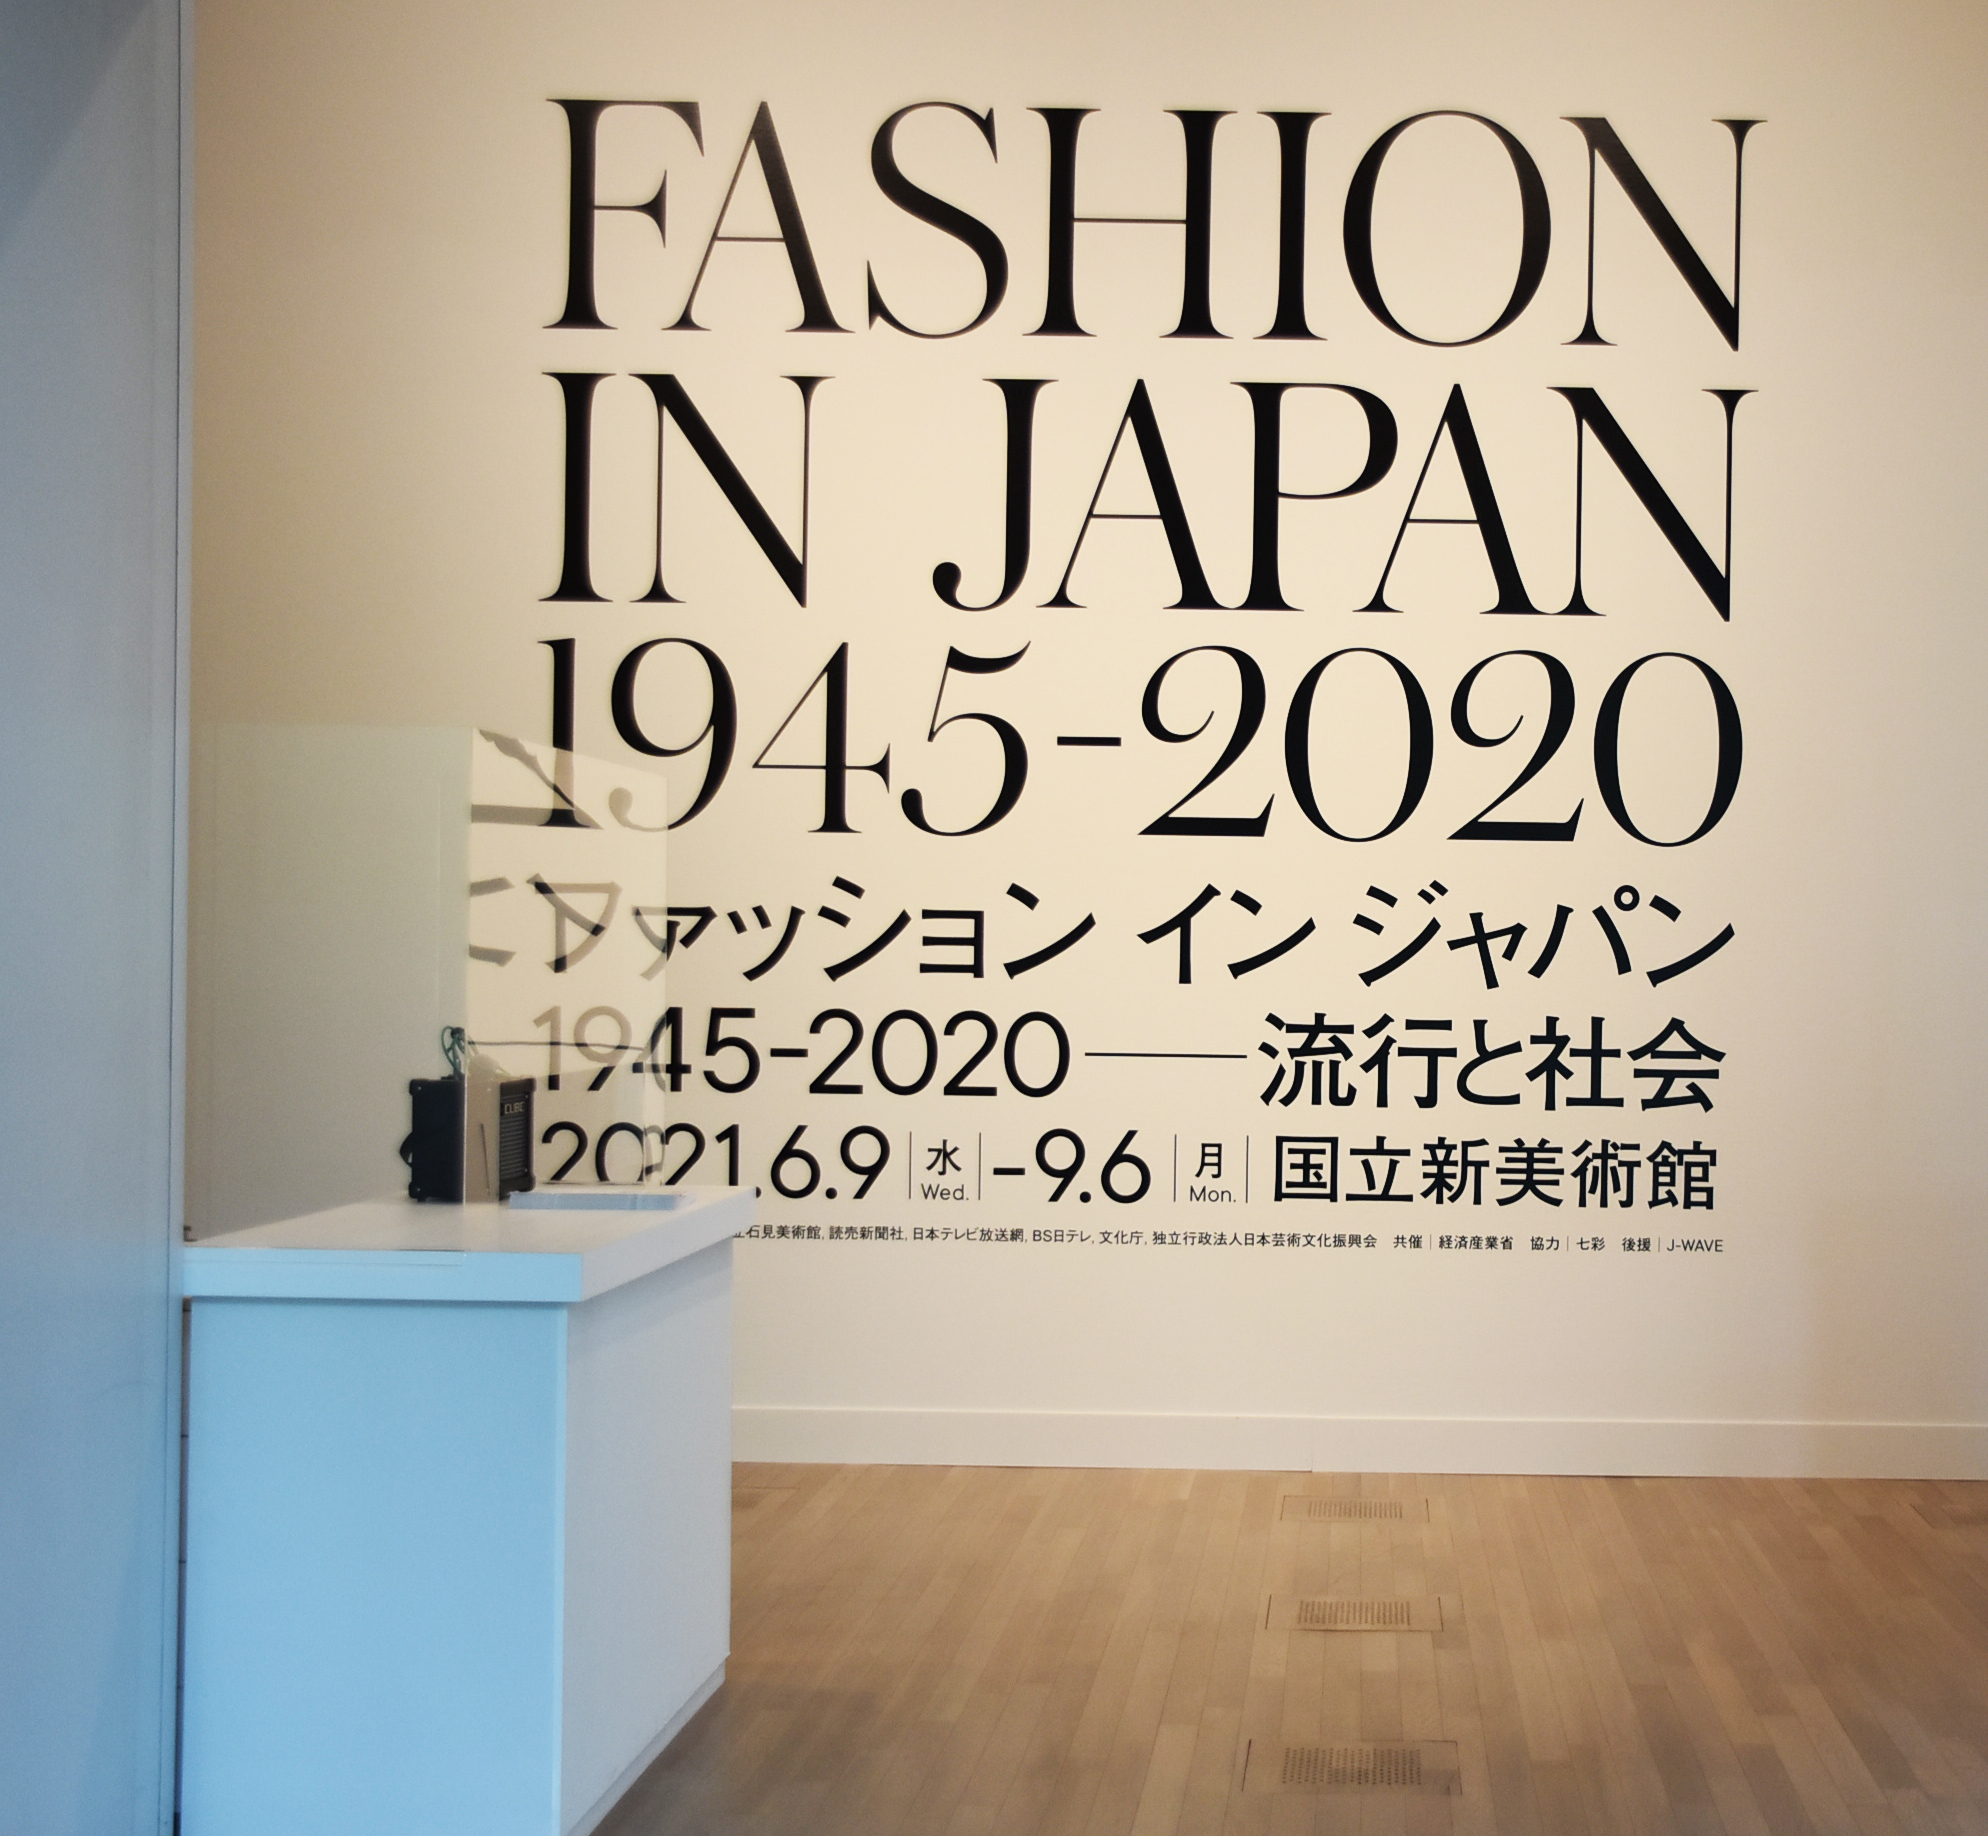 もんぺから Kawaii文化 サステナブルな近未来まで 日本のファッション文化を包括的に紹介する世界初の大展覧会 ファッション イン ジャパン 1945 流行と社会 が開幕 Artlogue